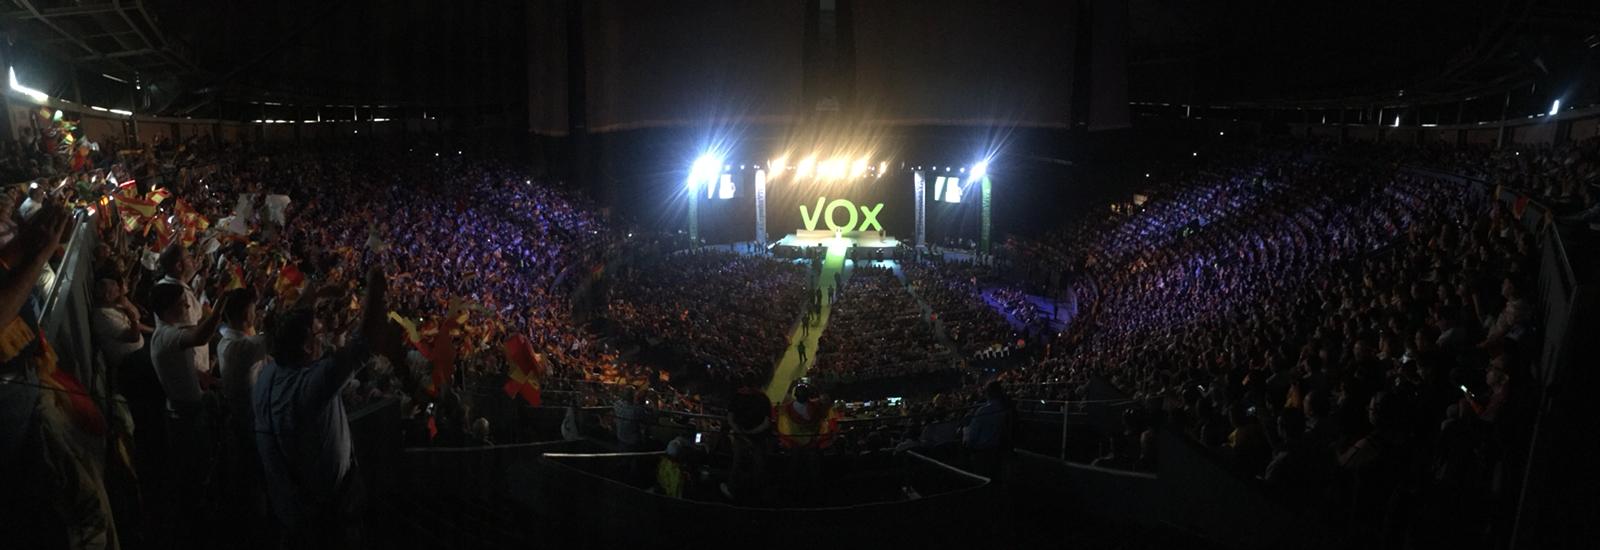 Acto de Vox en el Palacio de Vistalegre de Madrid. 